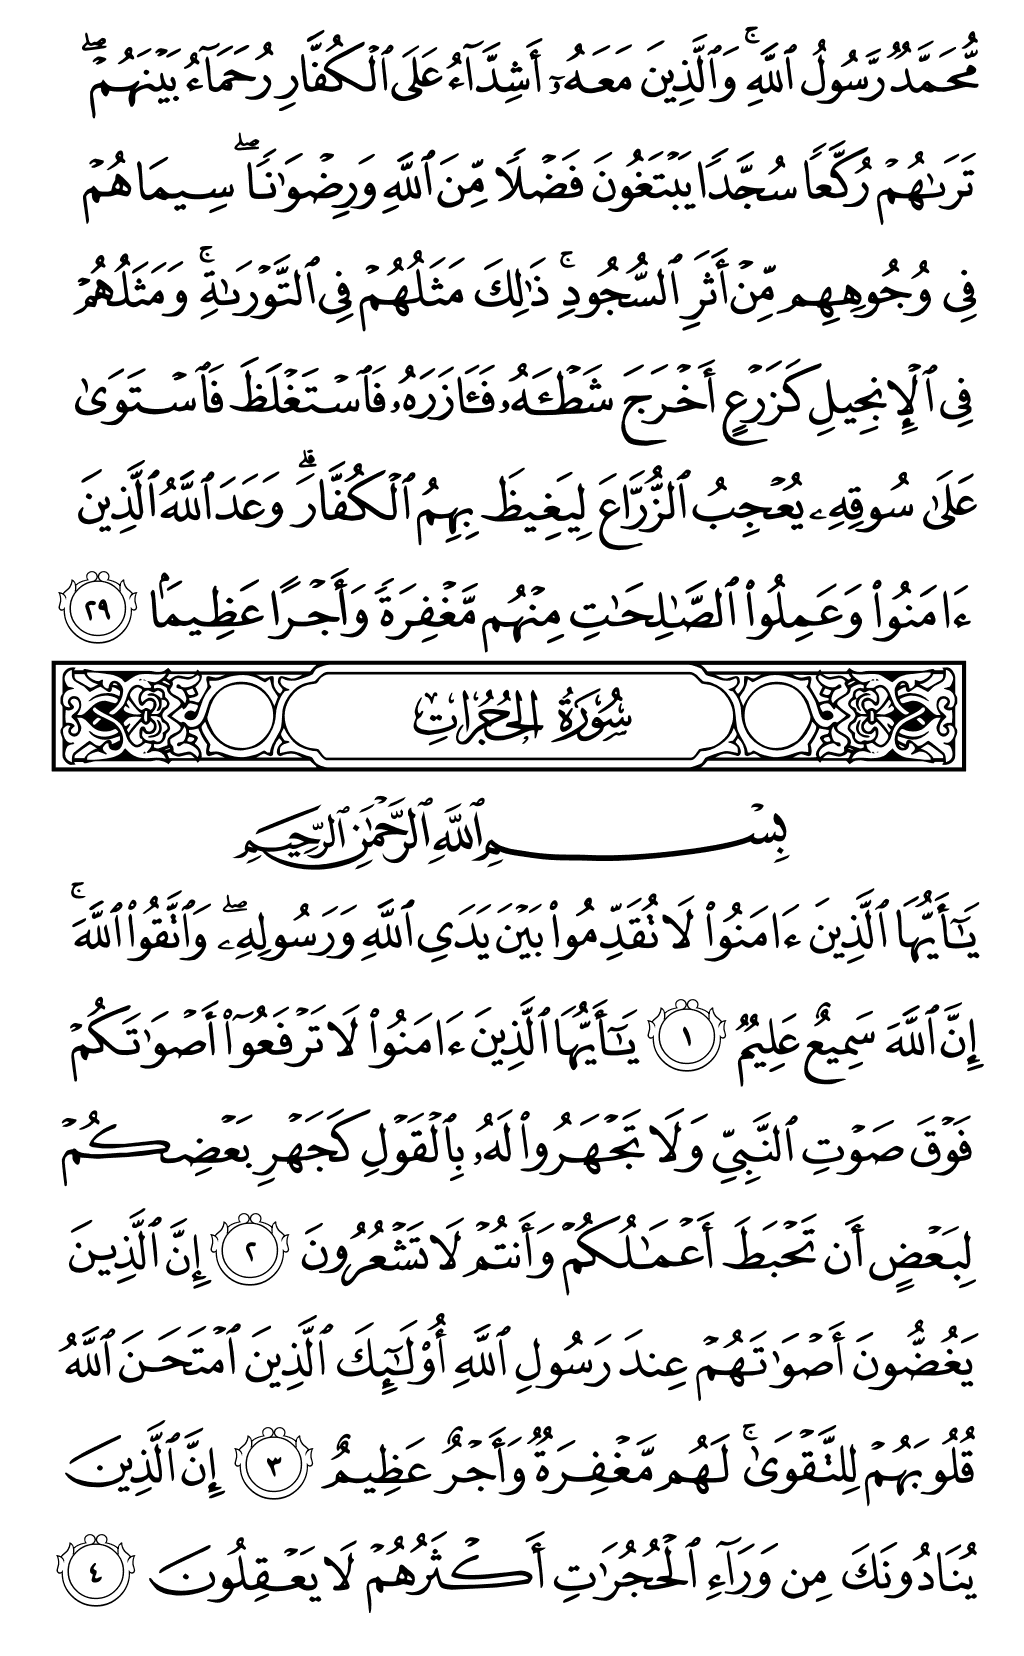 الصفحة رقم 515 من القرآن الكريم